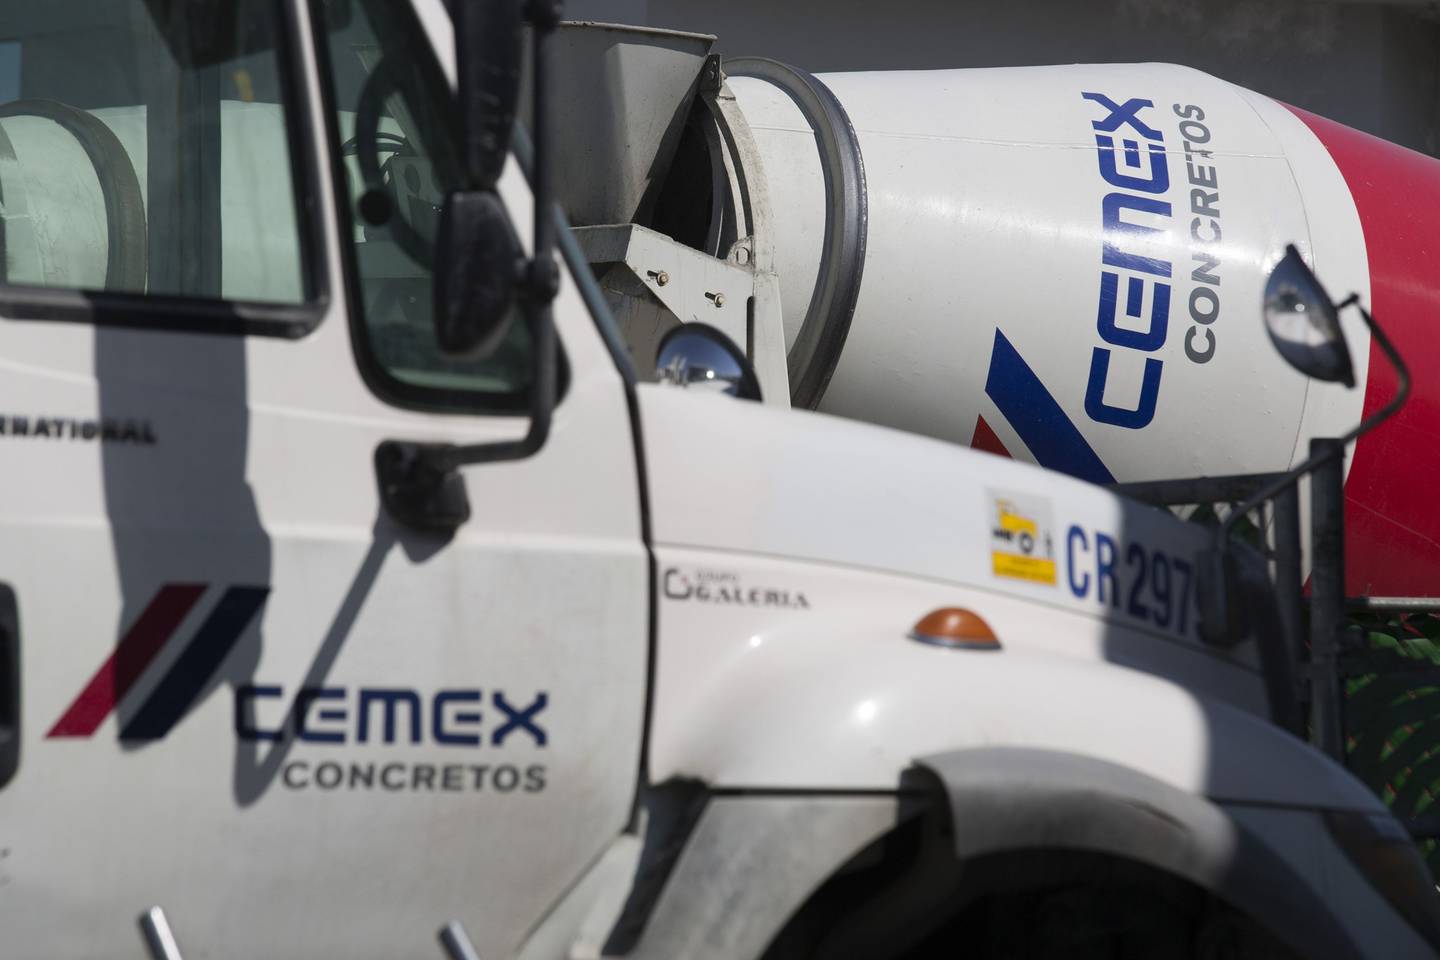 Plan de infraestructura de Biden detona al alza la demanda de acciones de Cemex y Grupo Cementos Chihuahua.